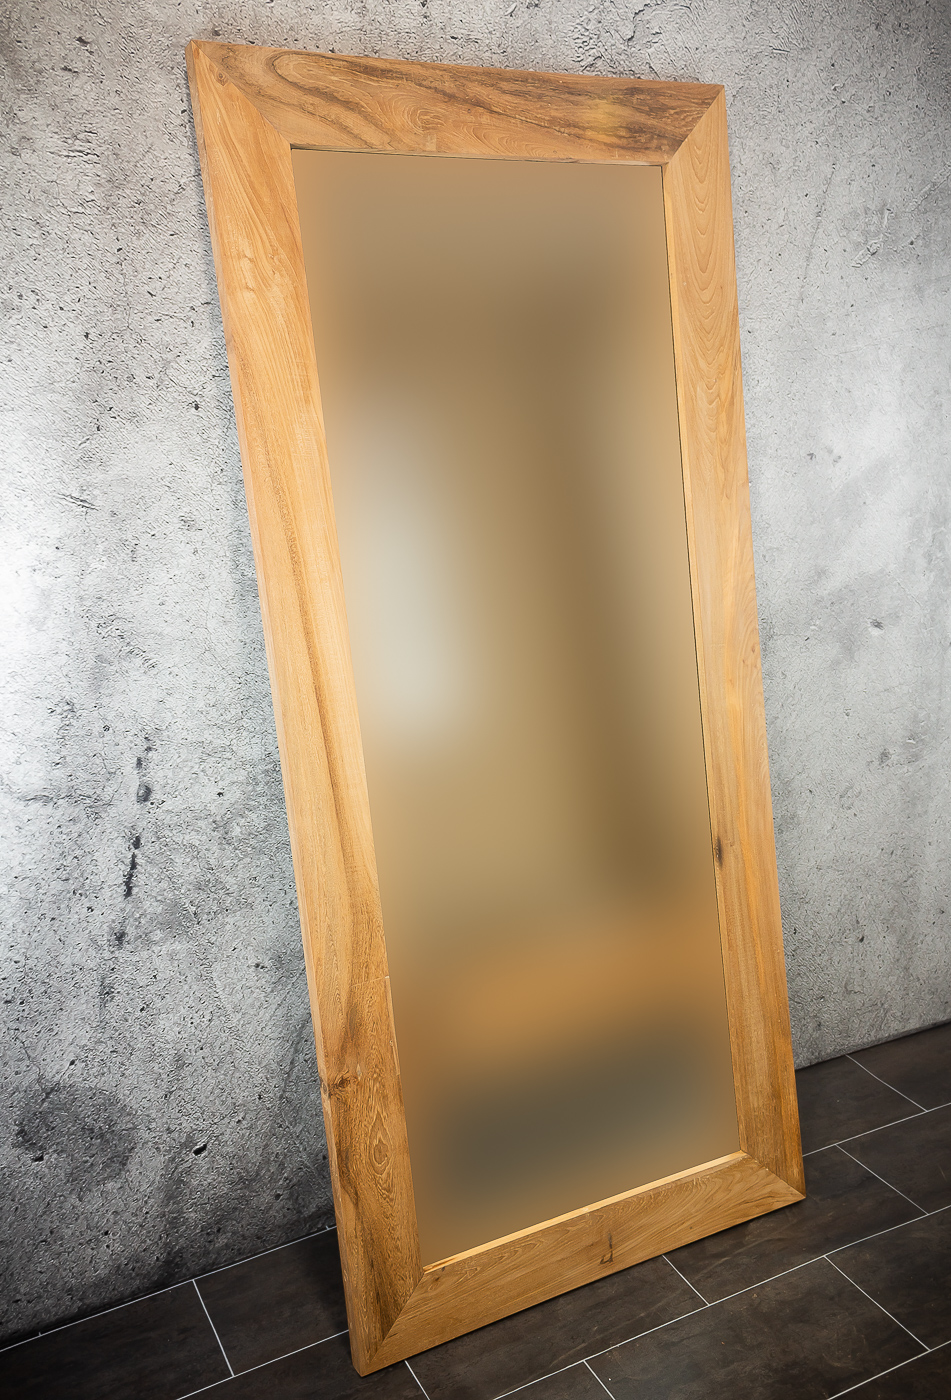 Espejo de madera de teca reciclada Smooth Line de 200x90cm. Rococó